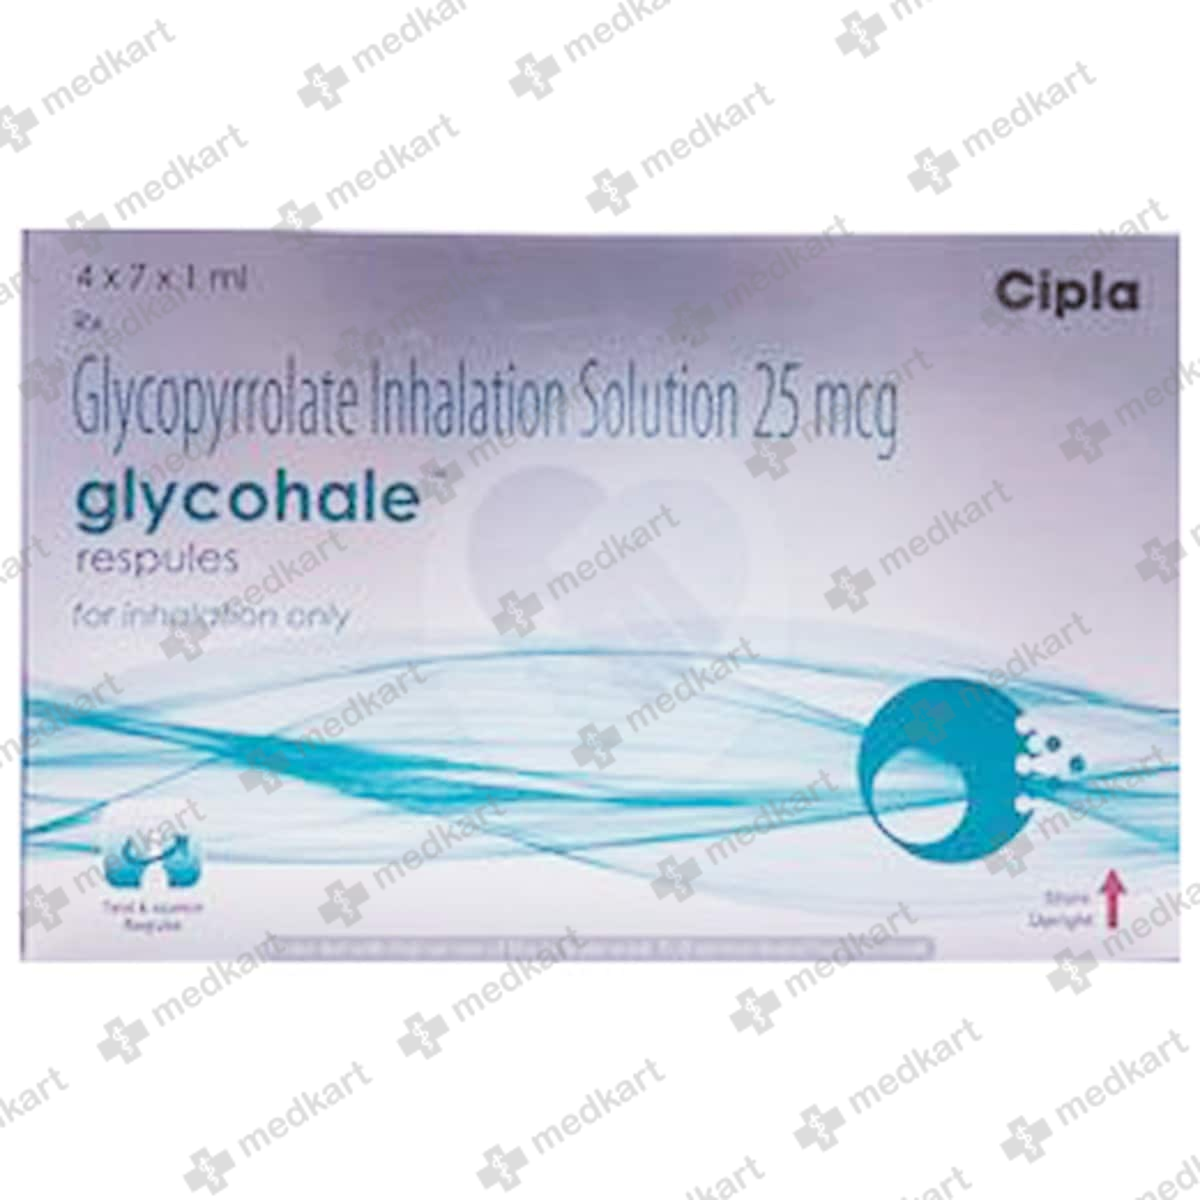 glycohale-respules-25mcg